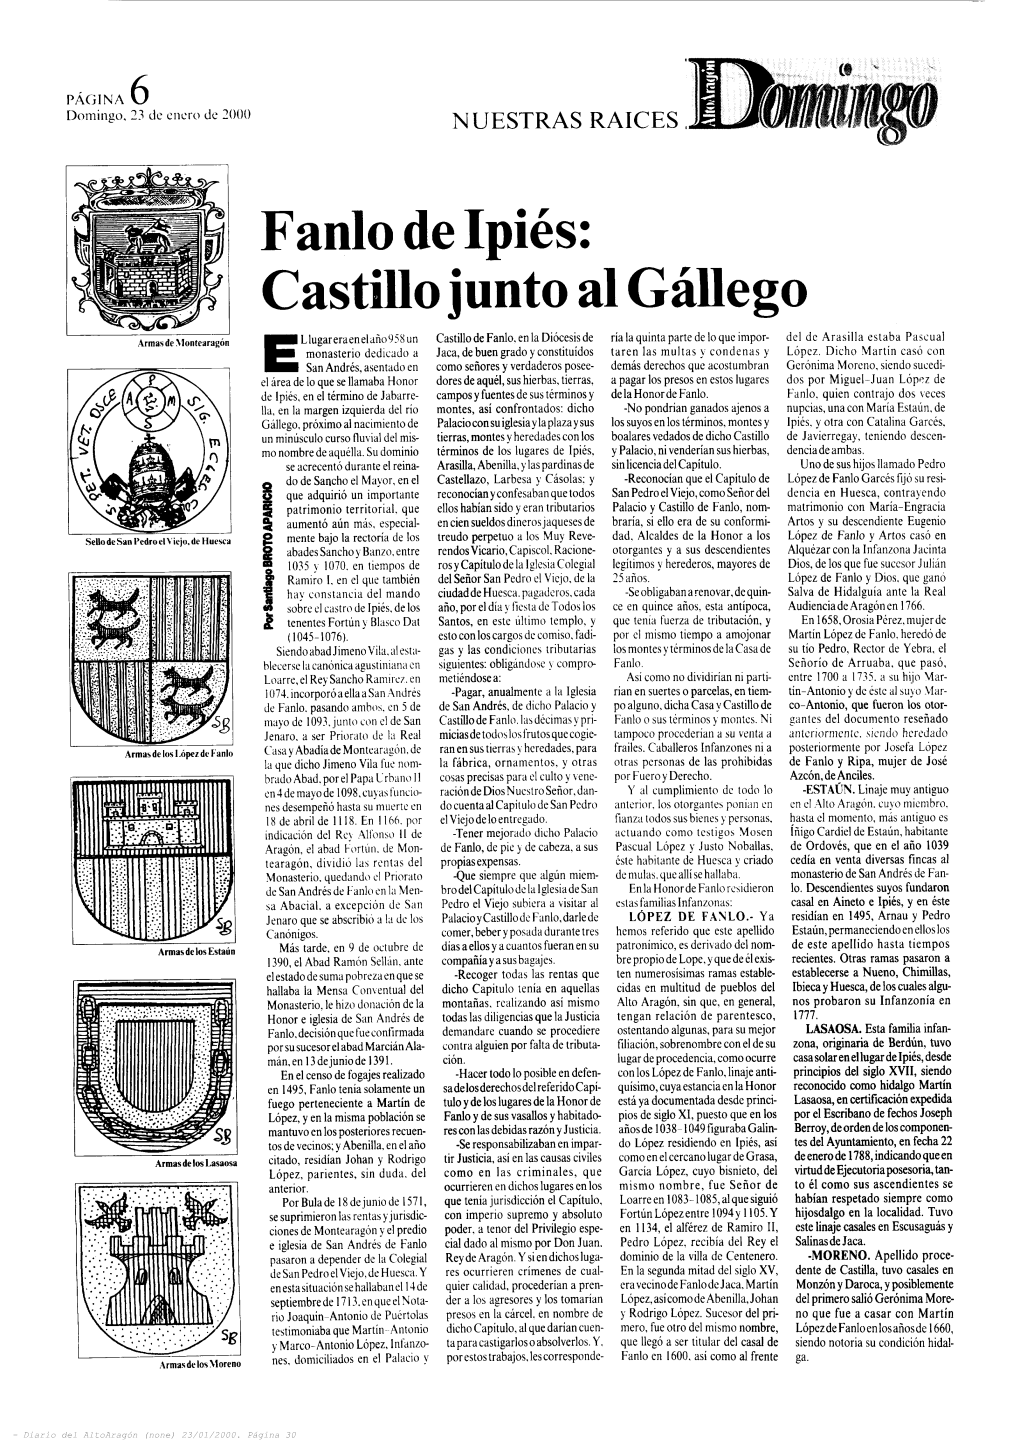 Fanlo De Ipiés: Castillo Junto Al Gállego E Llugareraenelaño958 Un Castillo De Fanlo